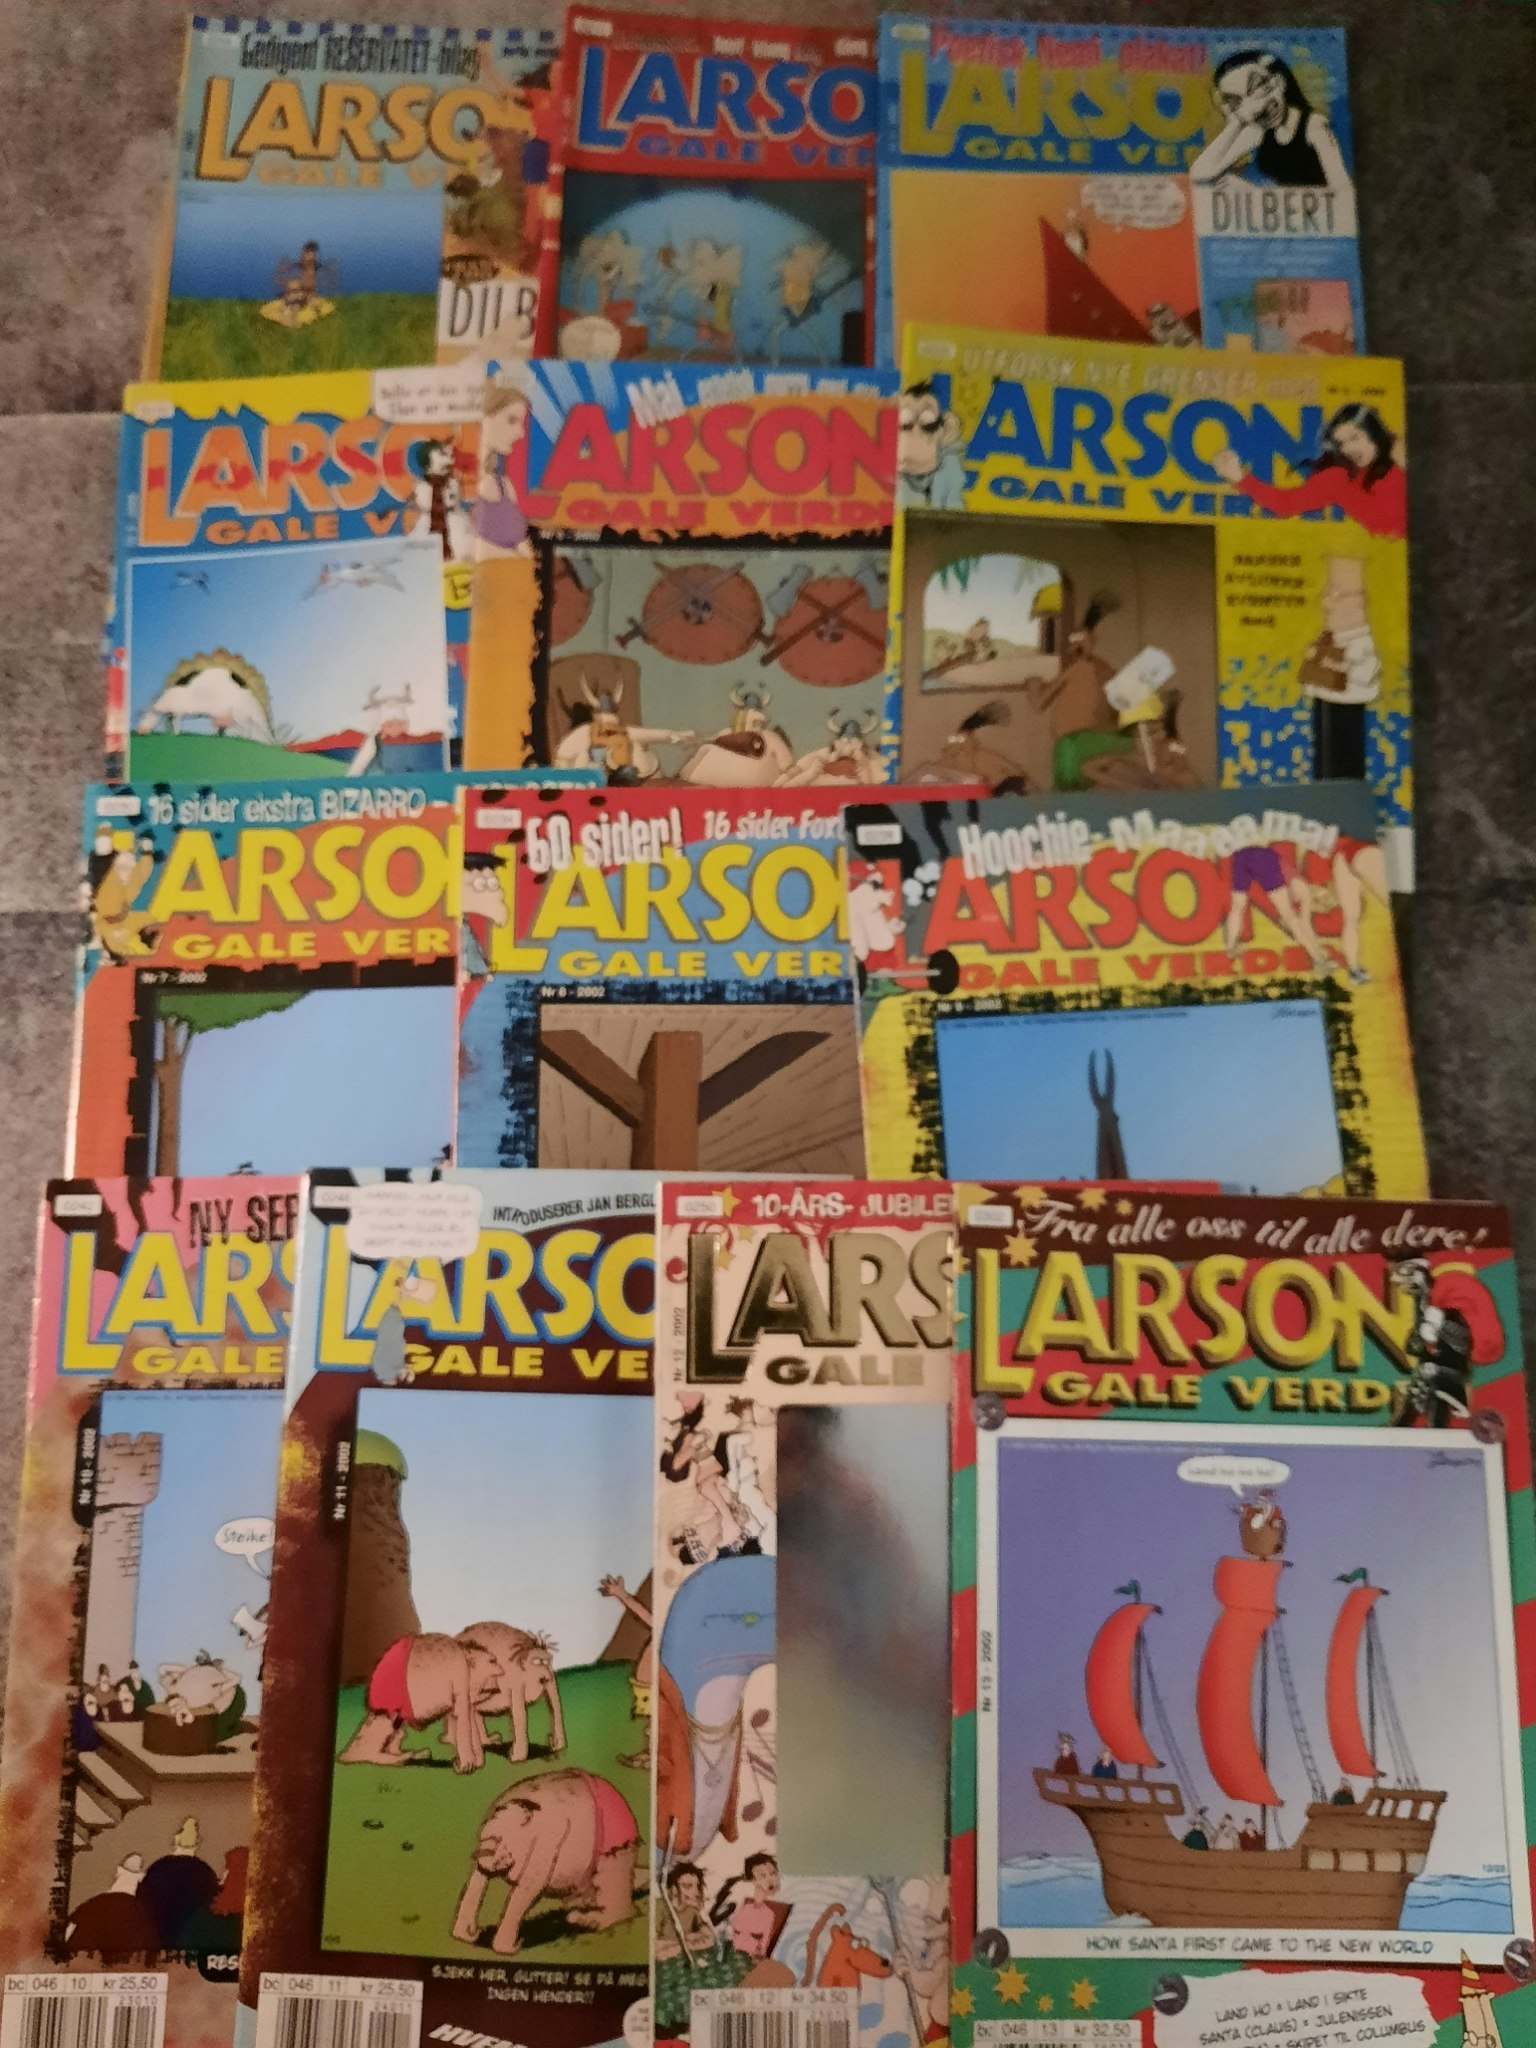 Larsons gale verden 2002 årgang komplett (lesepakke)